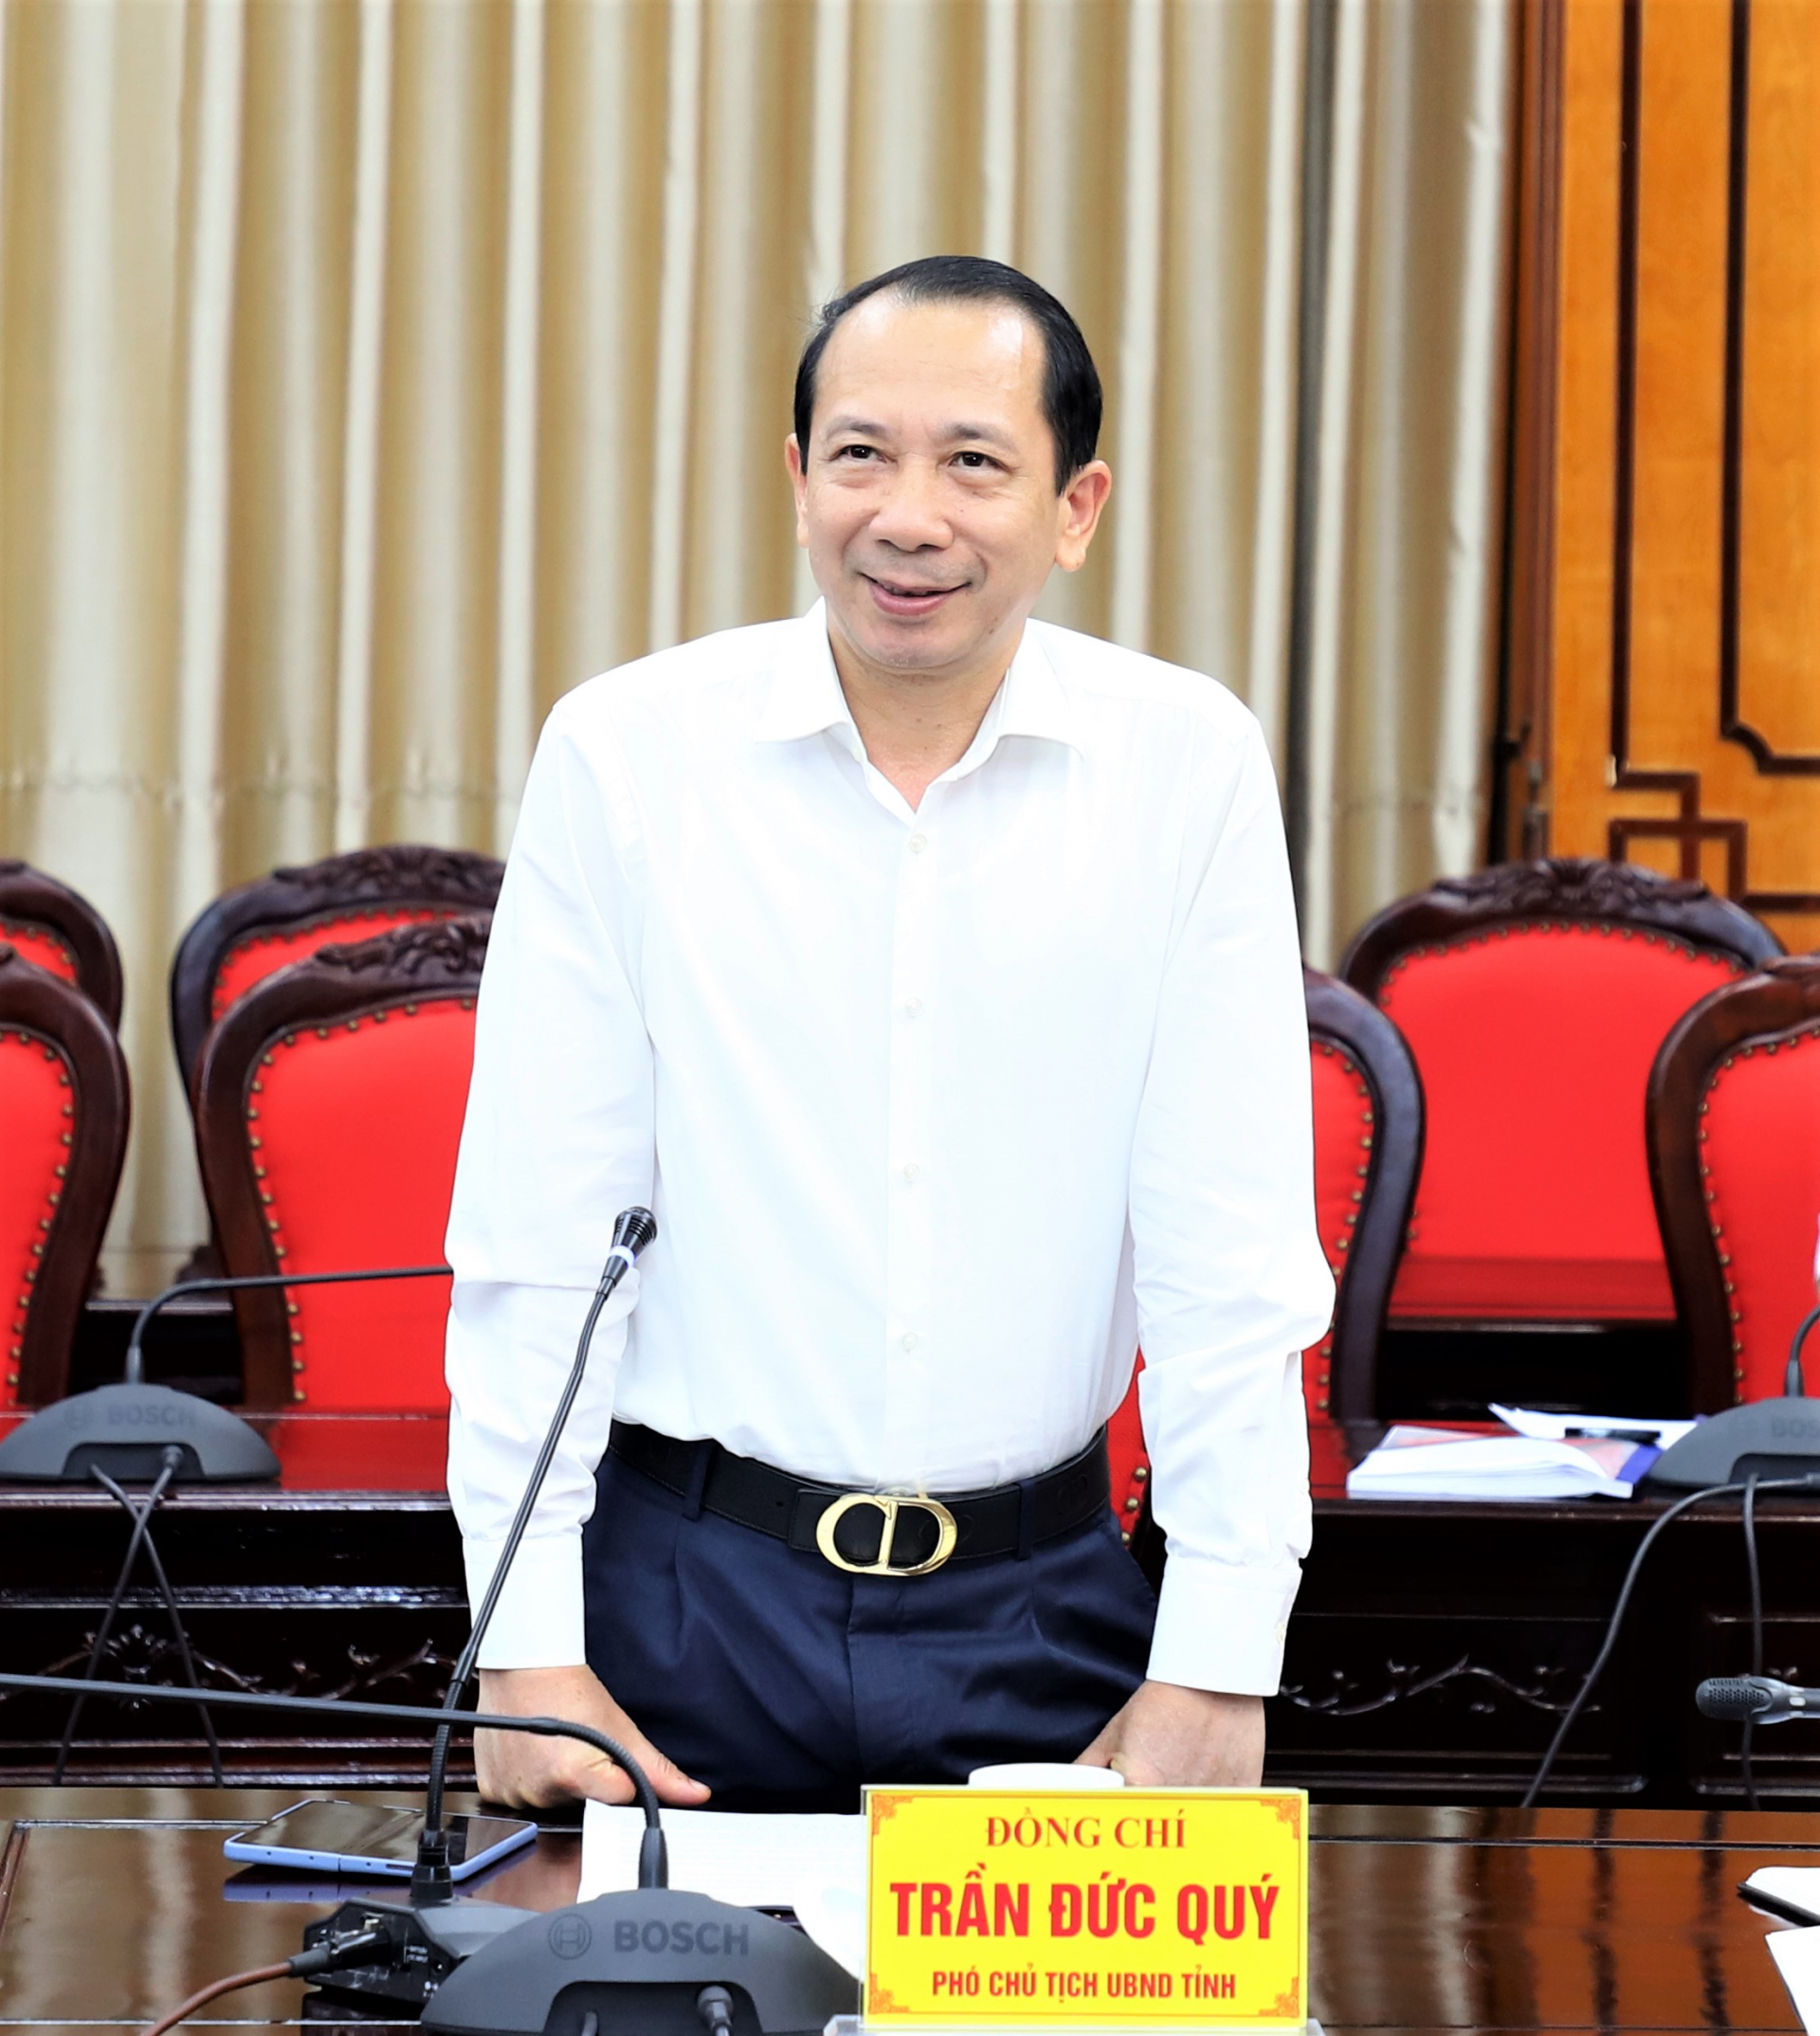 Phó Chủ tịch UBND tỉnh Trần Đức Quý đề nghị các ngành, địa phương chủ động nắm bắt khó khăn, nêu cao trách nhiệm người đứng đầu để tháo gỡ vướng mắc trong giải ngân vốn đầu tư công.